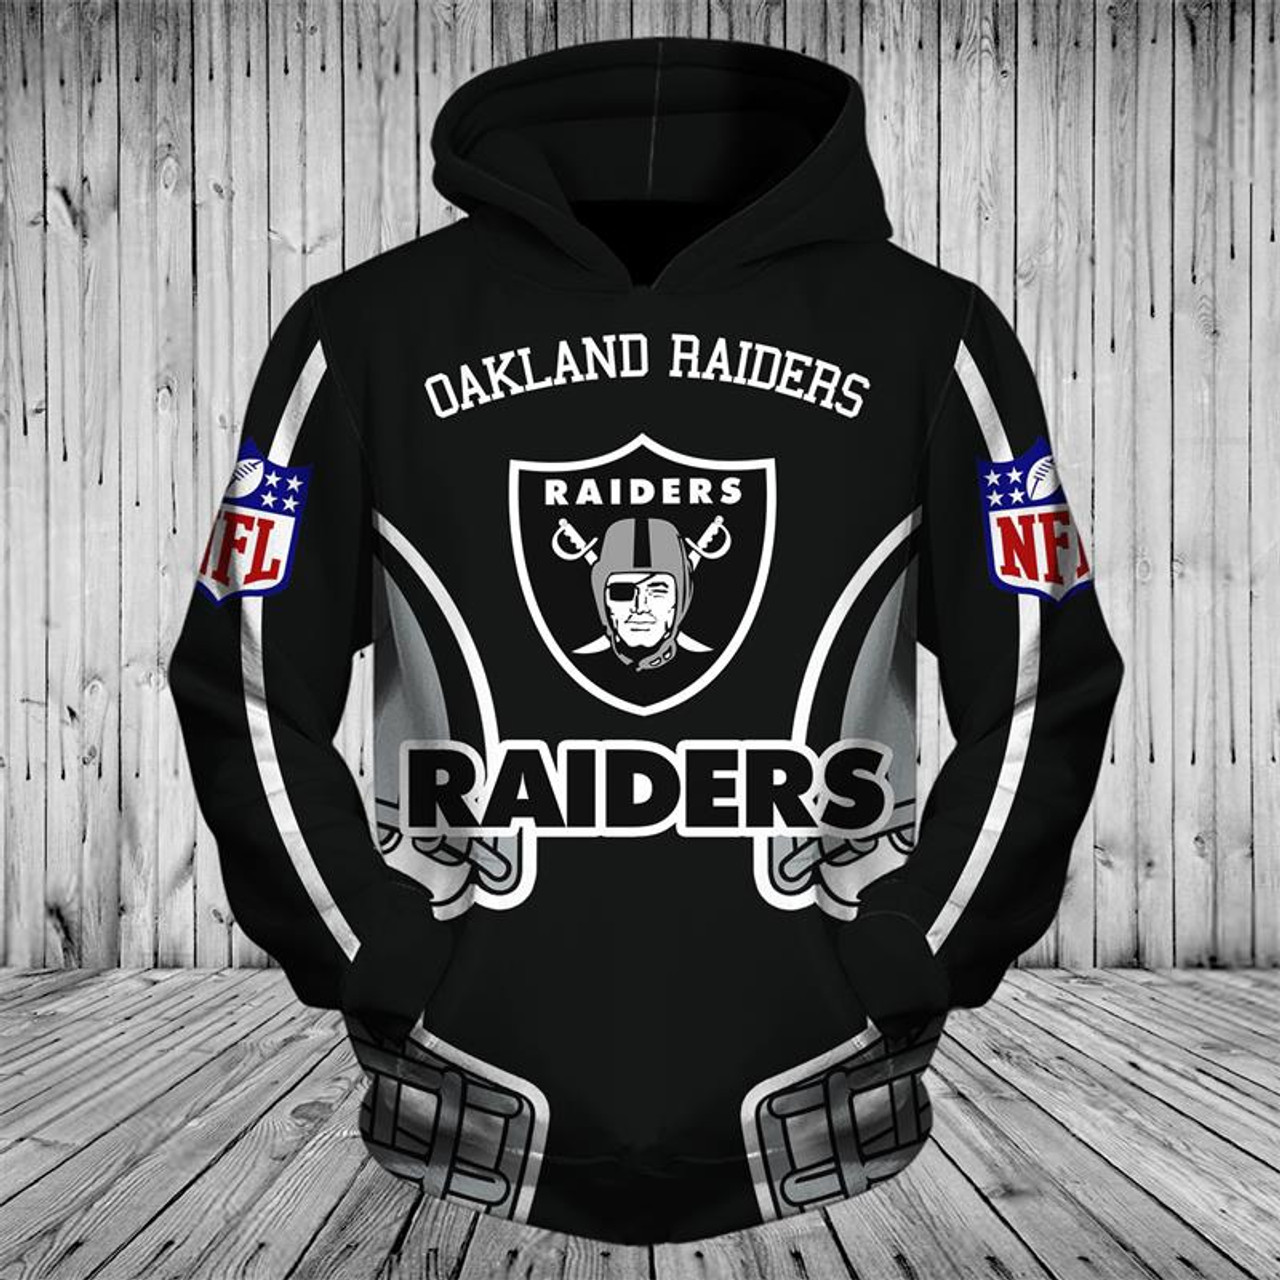 raiders pullover hoodie